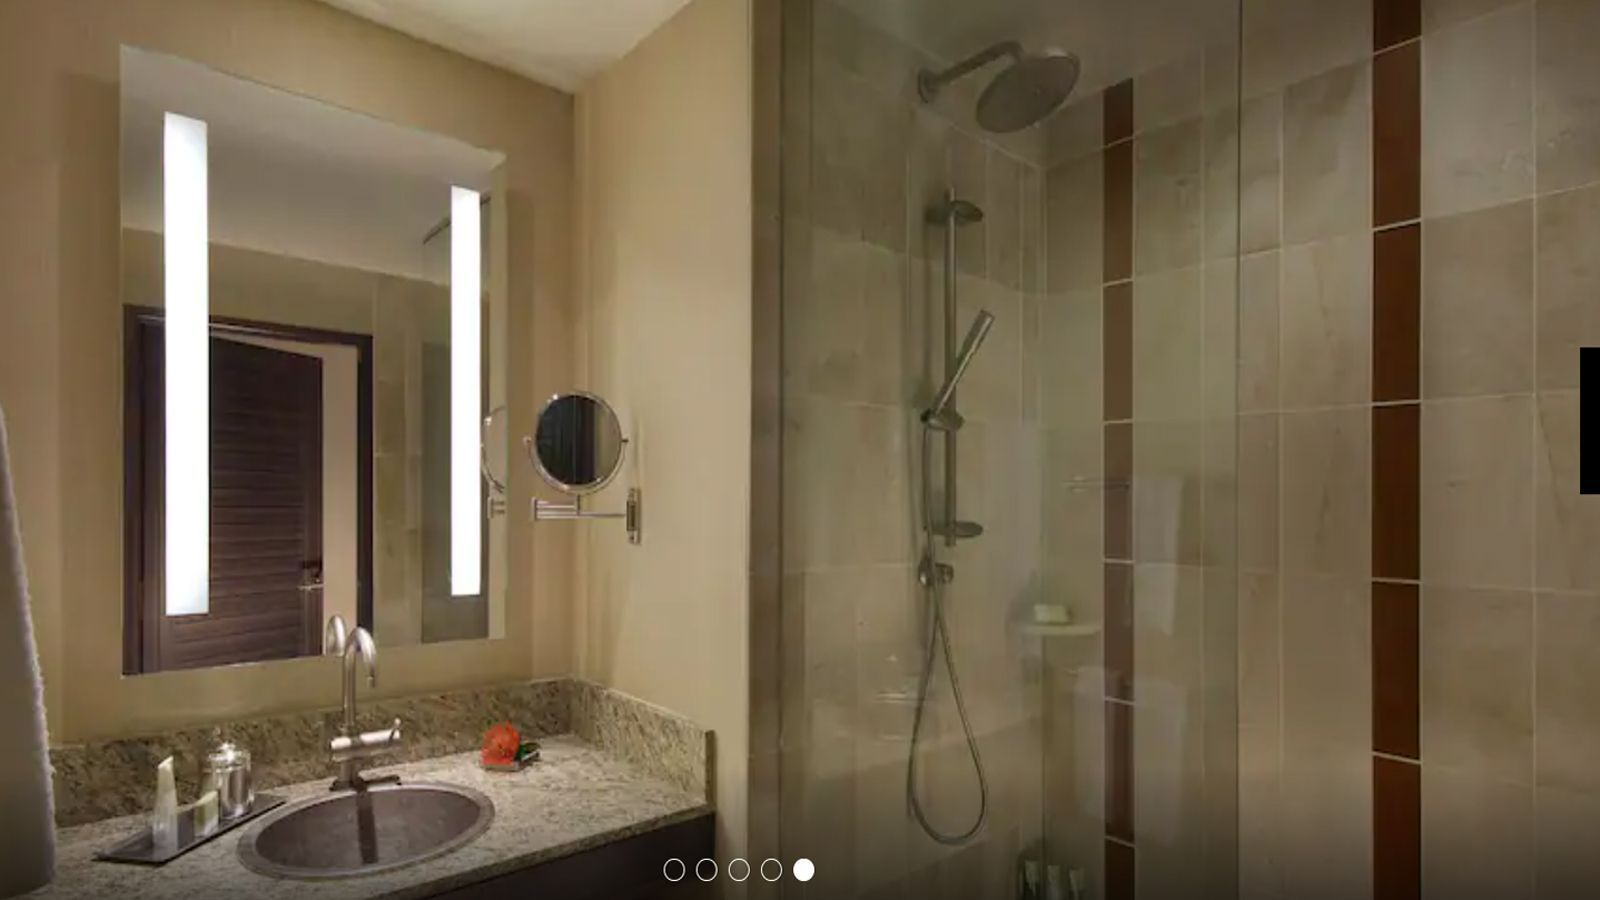 
                <strong>Kansas City Chiefs: Hyatt Regency Scottsdale Resort and Spa at Gainey Ranch</strong><br>
                Im Badezimmer wartet eine große Dusche auf die Spieler.
              